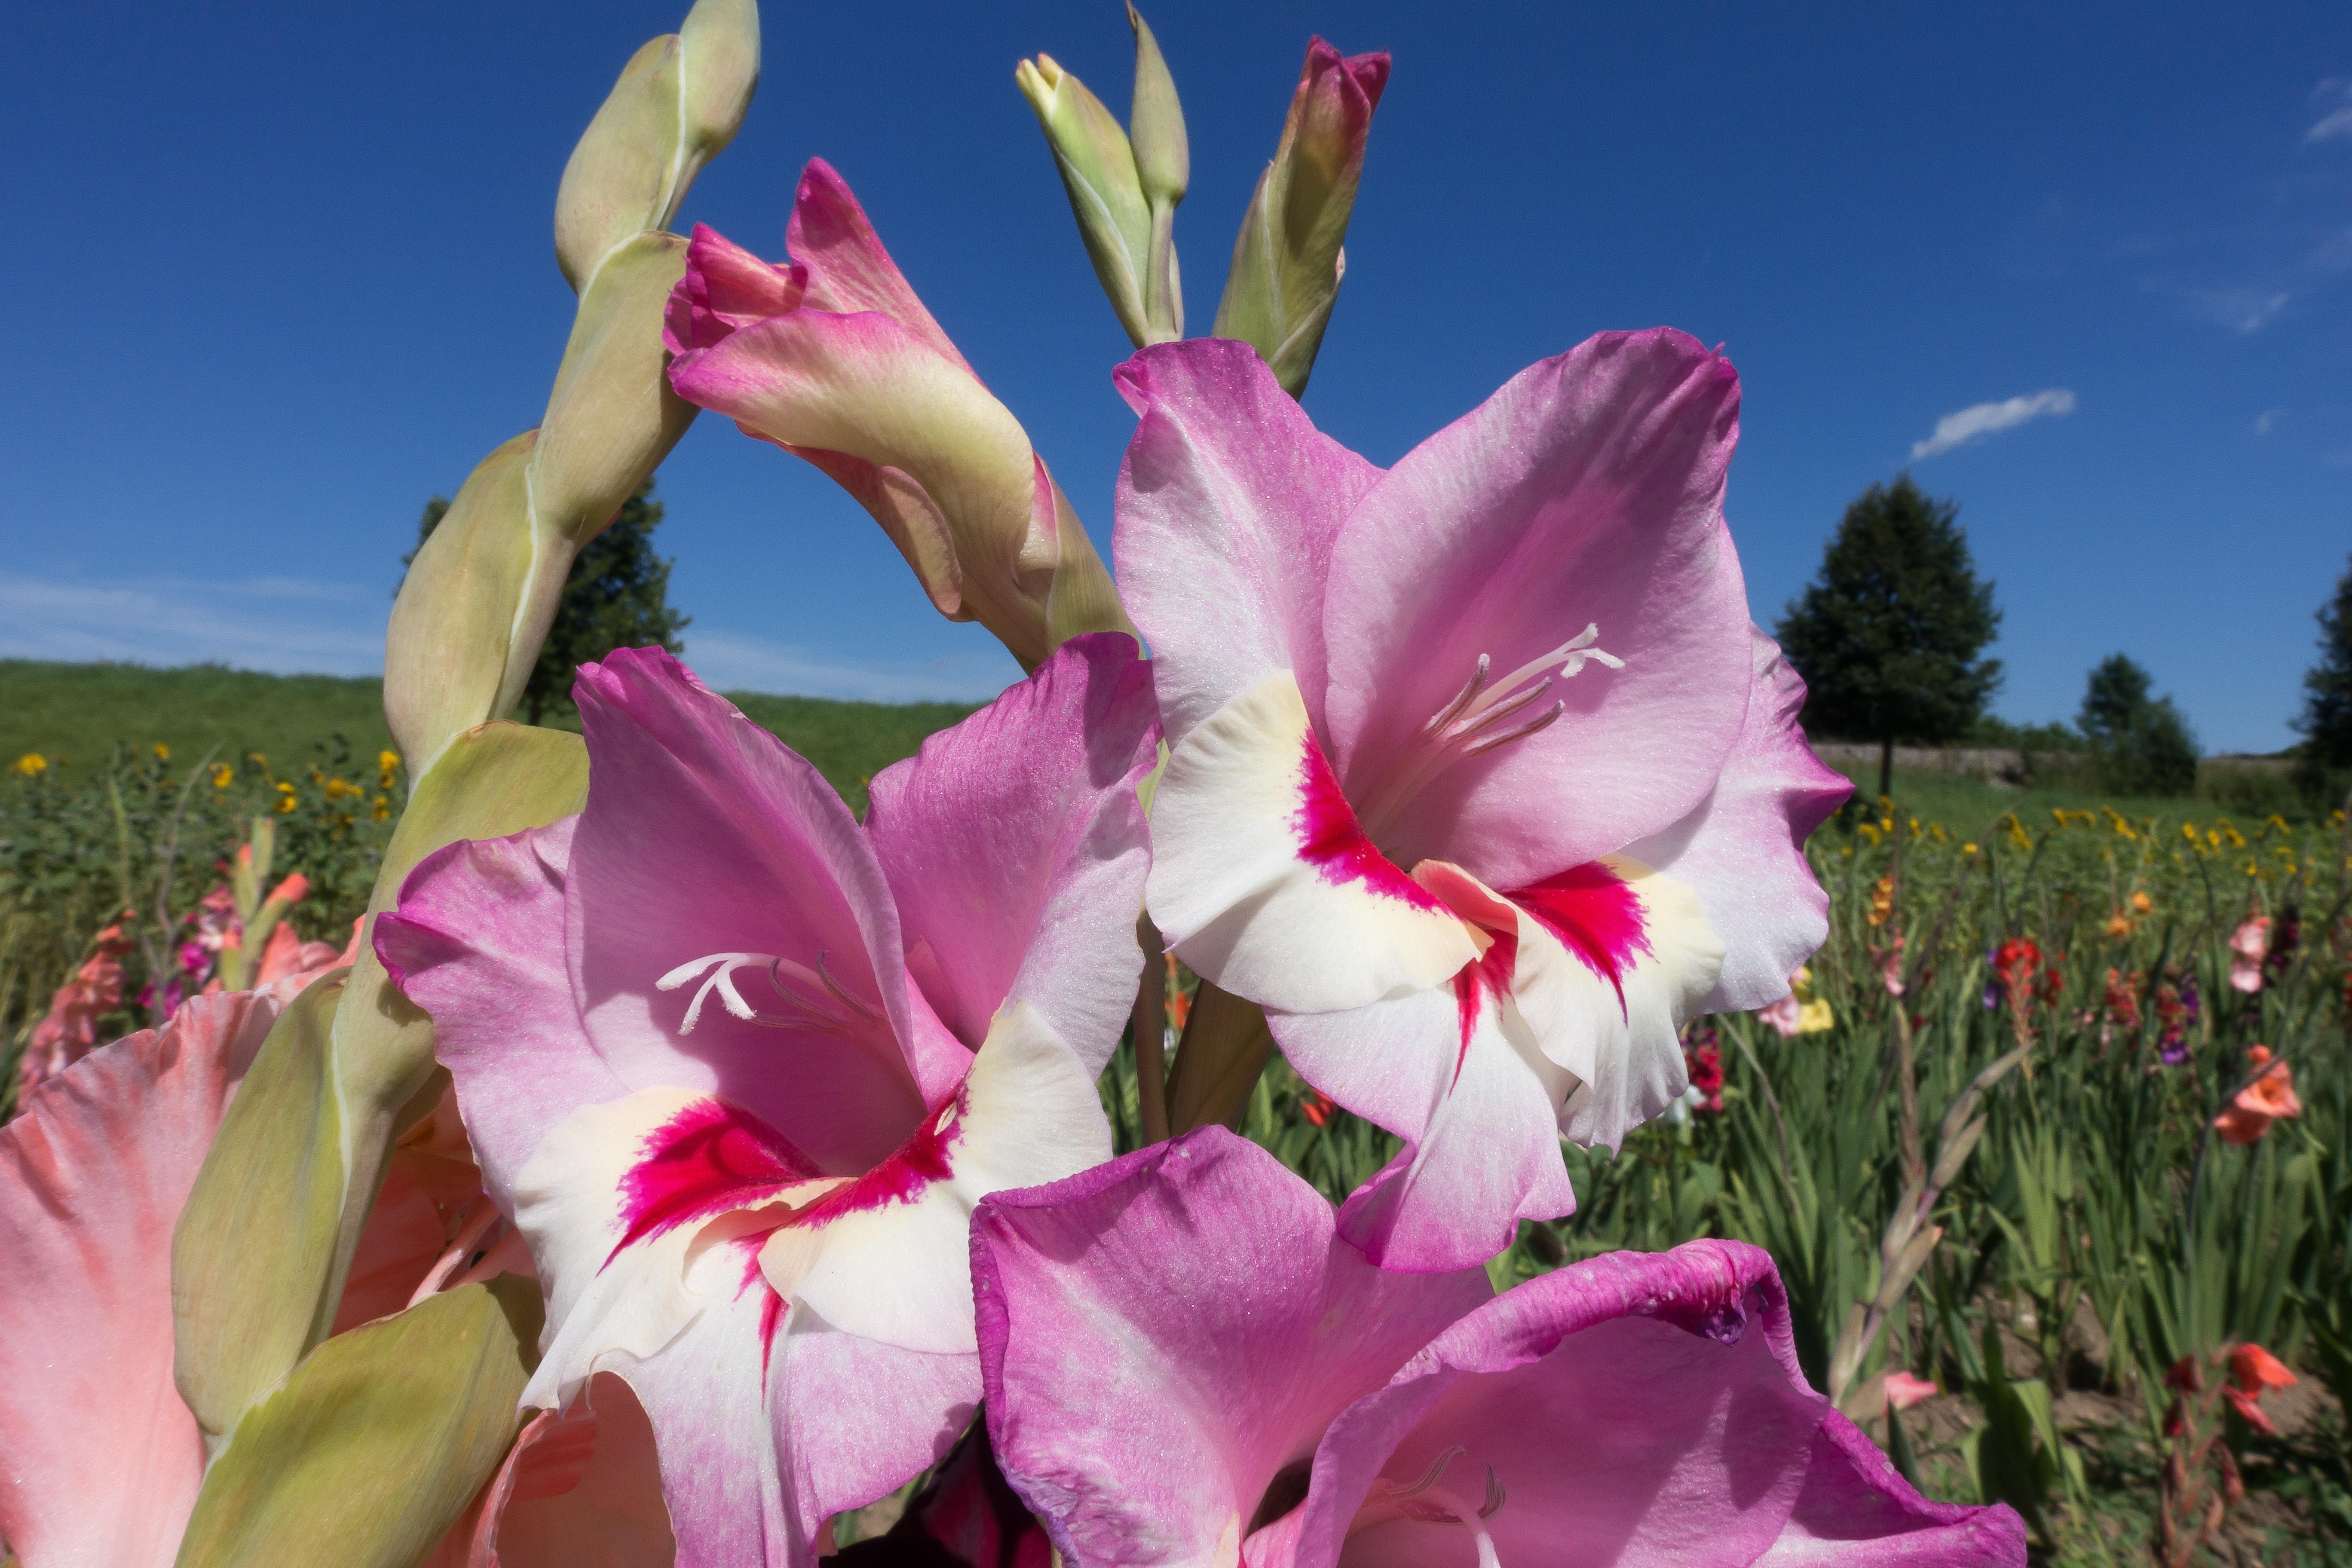 Sword Flower, Gladiolus, flower, pink color free image